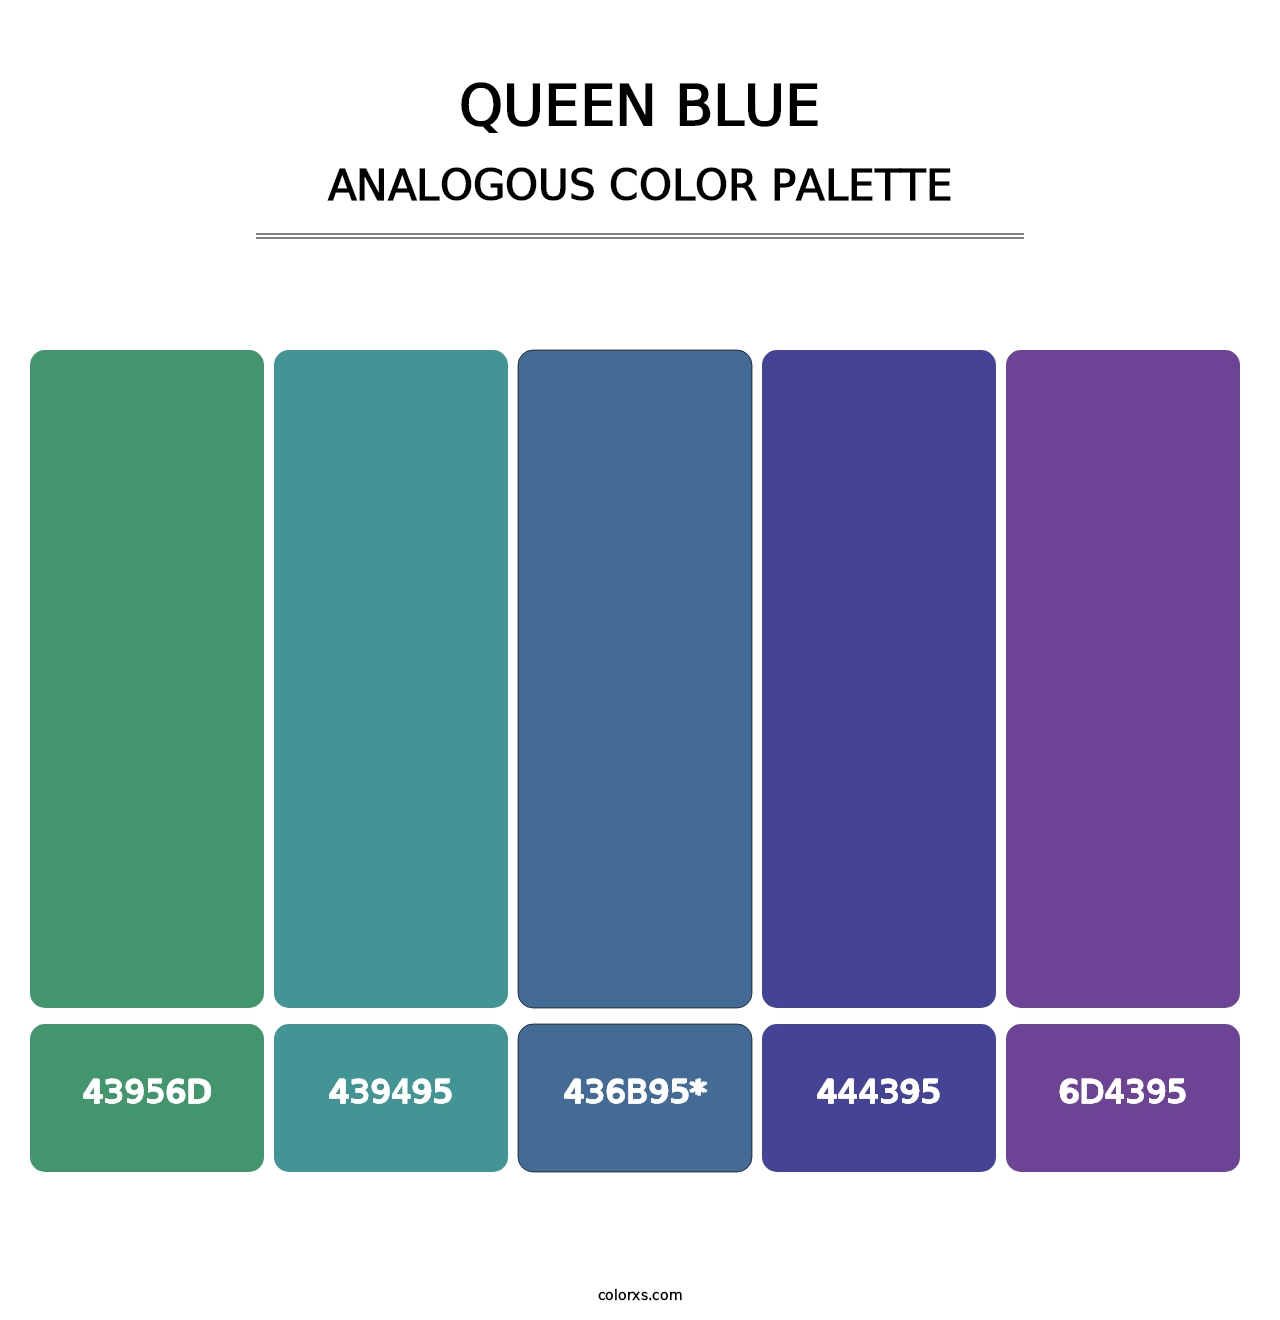 Queen Blue - Analogous Color Palette